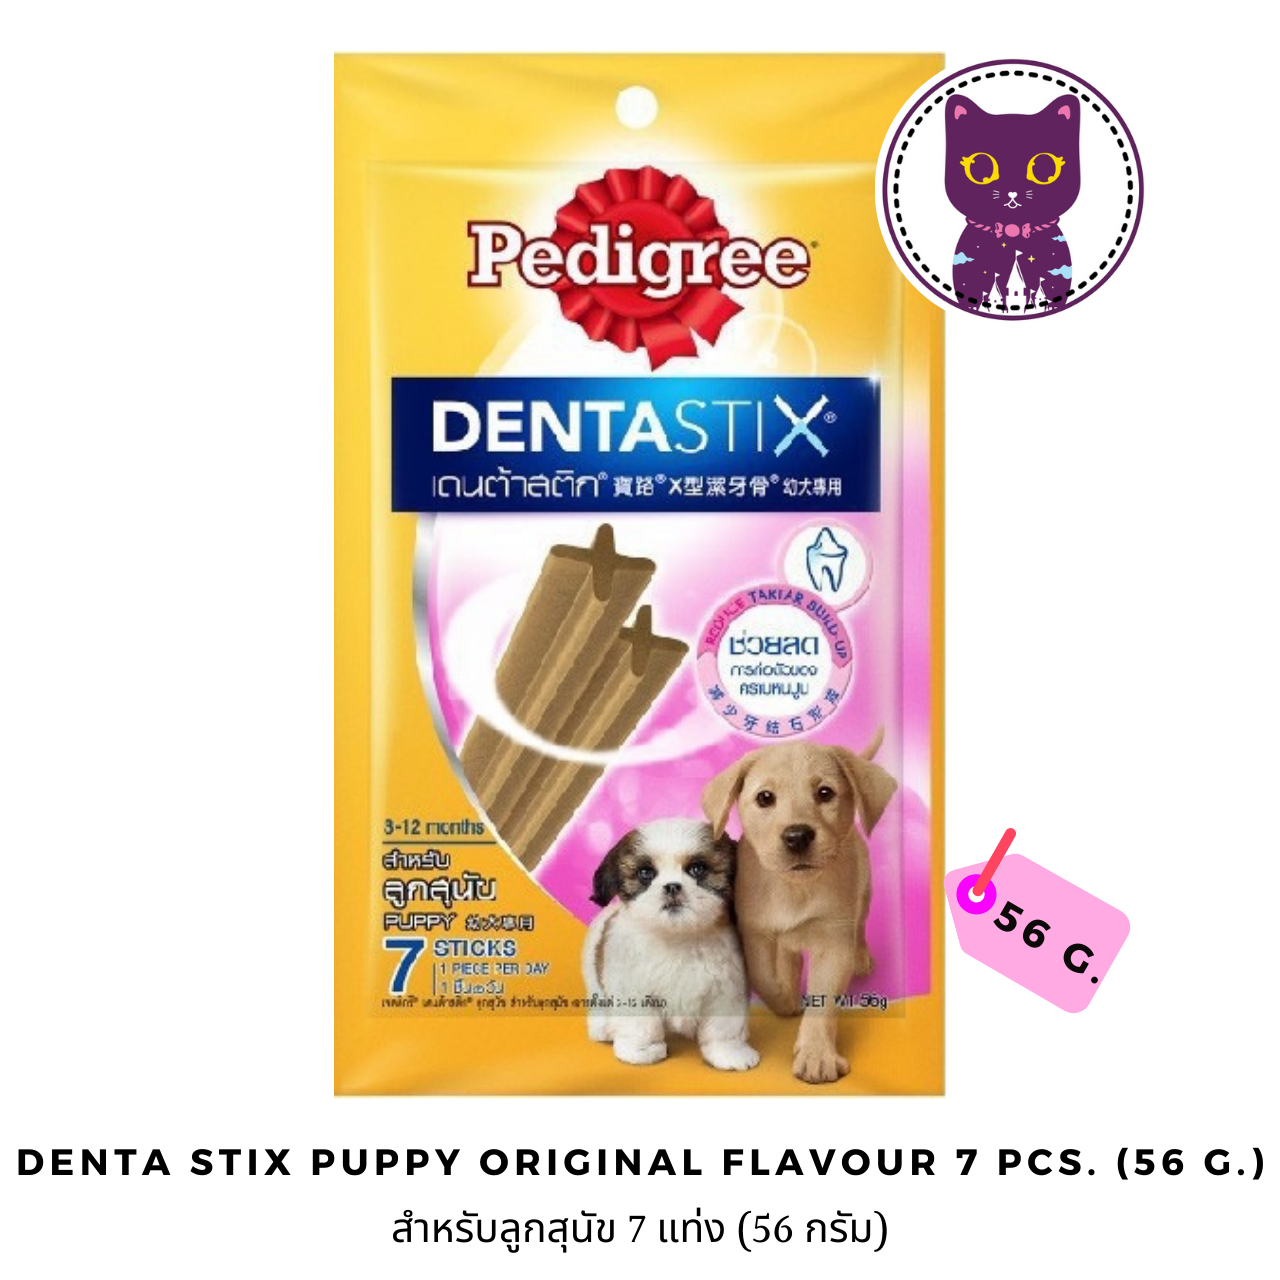 ภาพประกอบคำอธิบาย [WSP] Pedigree Denta Stix Original Flavor (Puppy) เพ็ดดิกรี ขนมขัดฟันสุนัขรูปตัว X สำหรับลูกสุนัข ออริจินอล 7 แท่ง